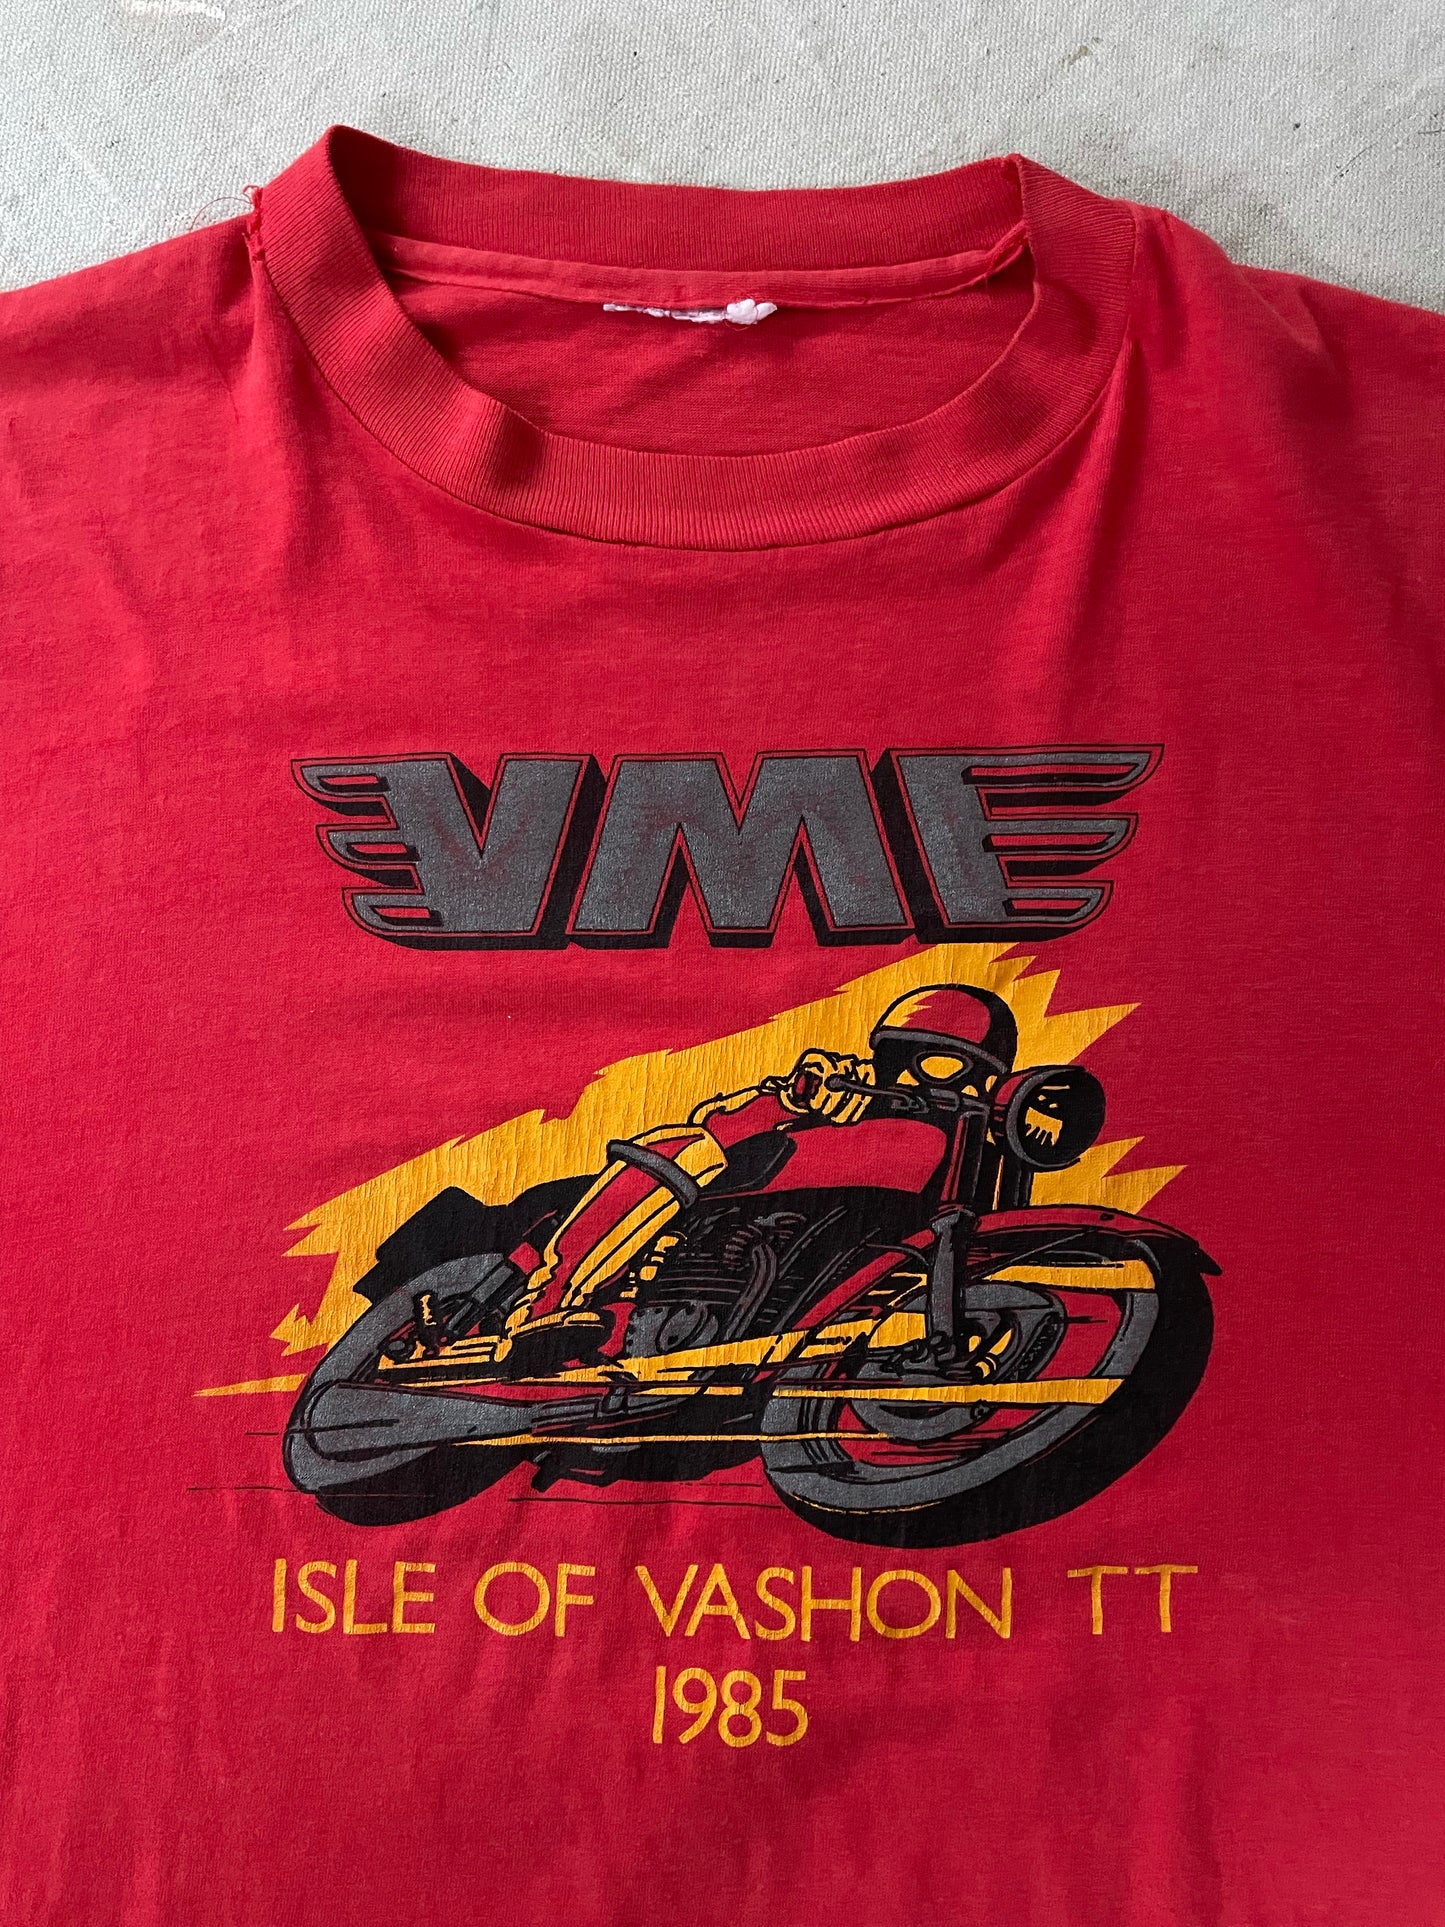 VME Isle Of Vashon TT 1985 Tee